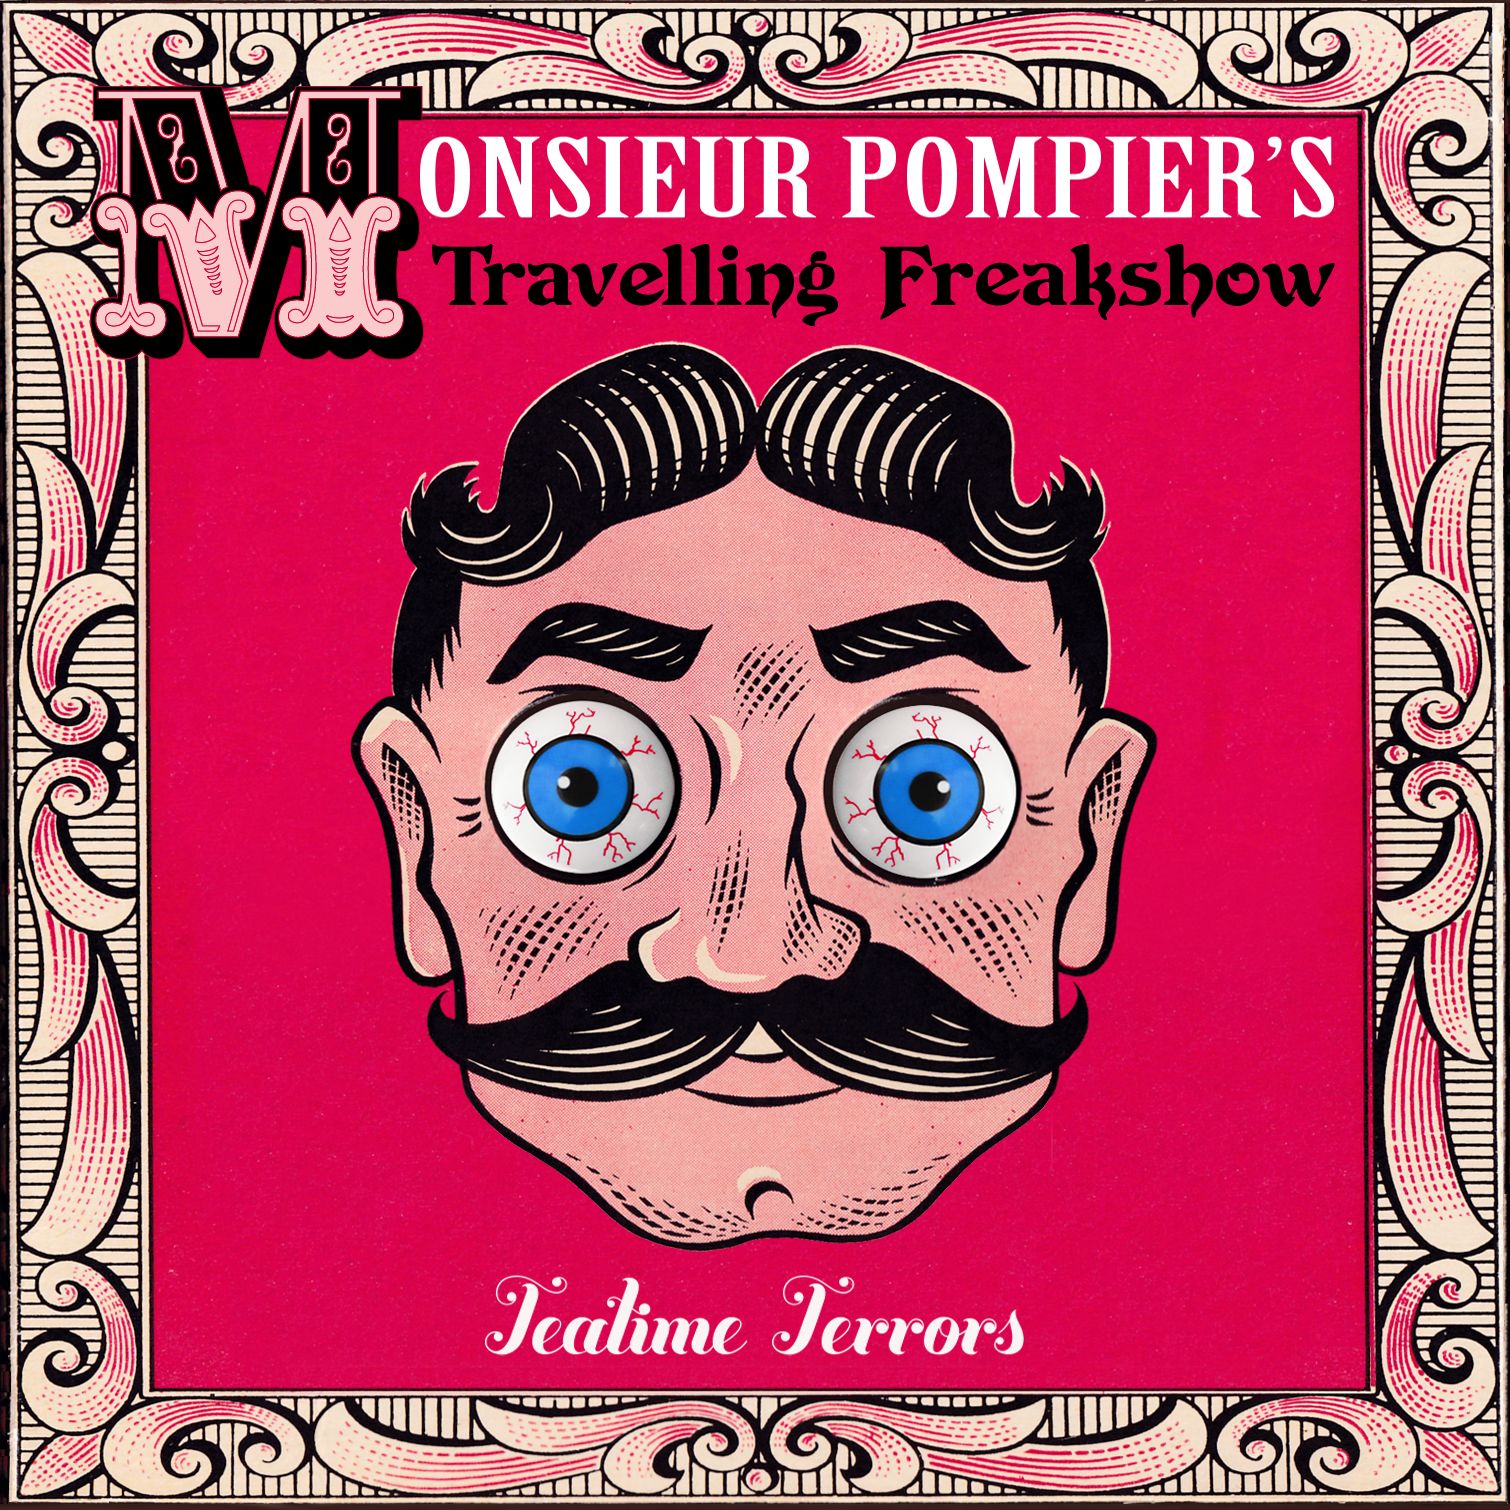 Monsieur Pompier’s Travelling Freakshow